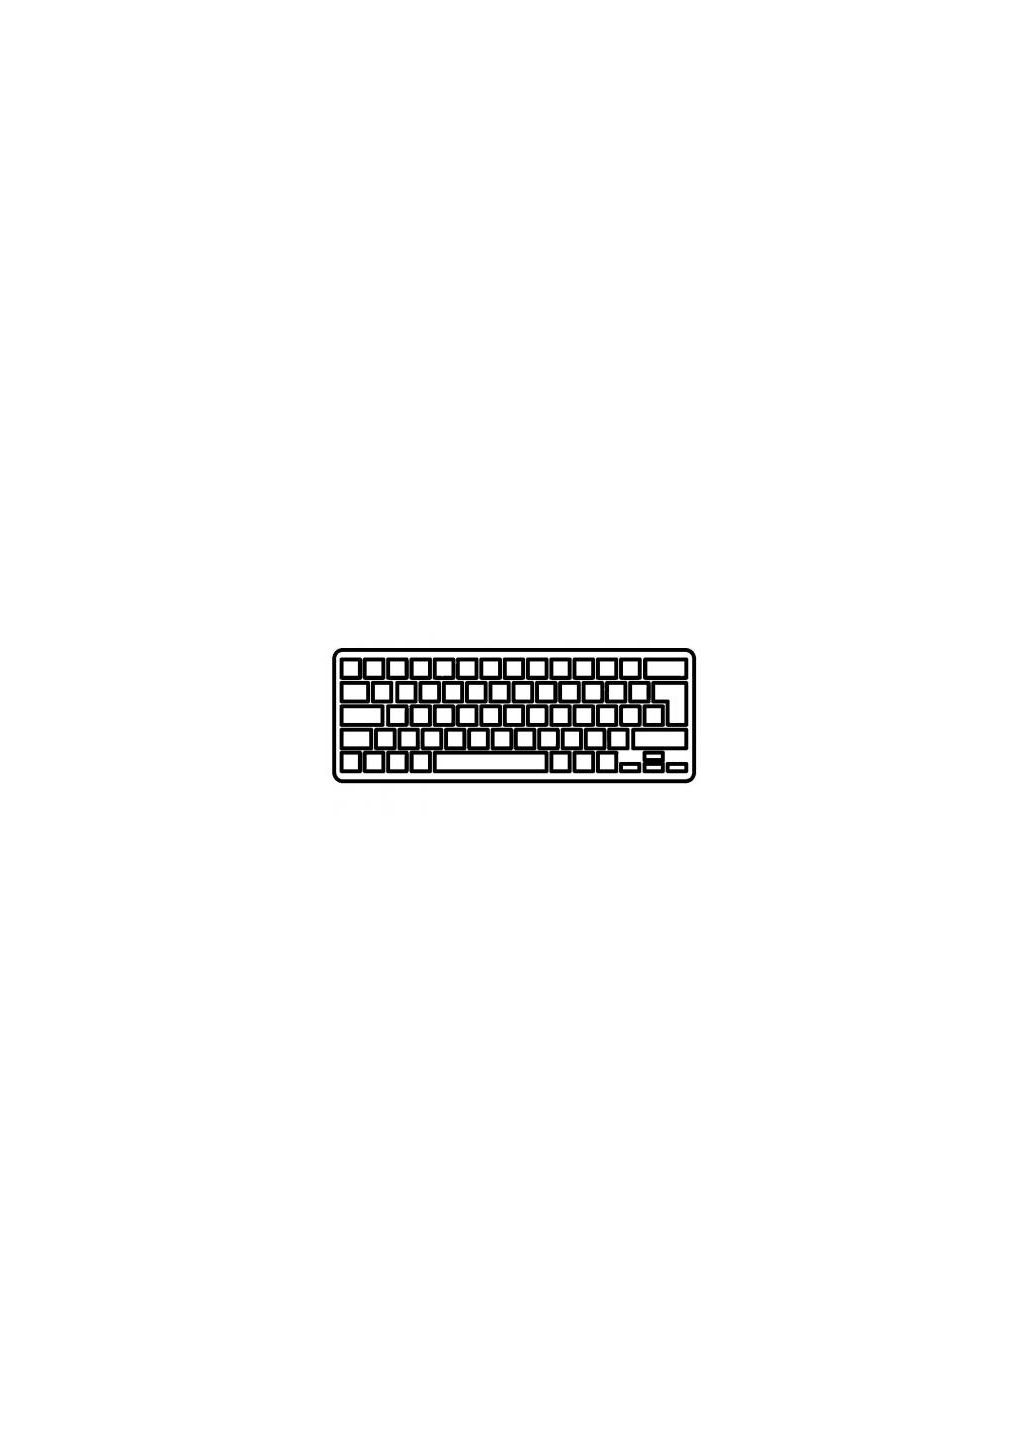 Клавиатура ноутбука (A43497) HP envy 13 series черная без рамки ua (276707674)